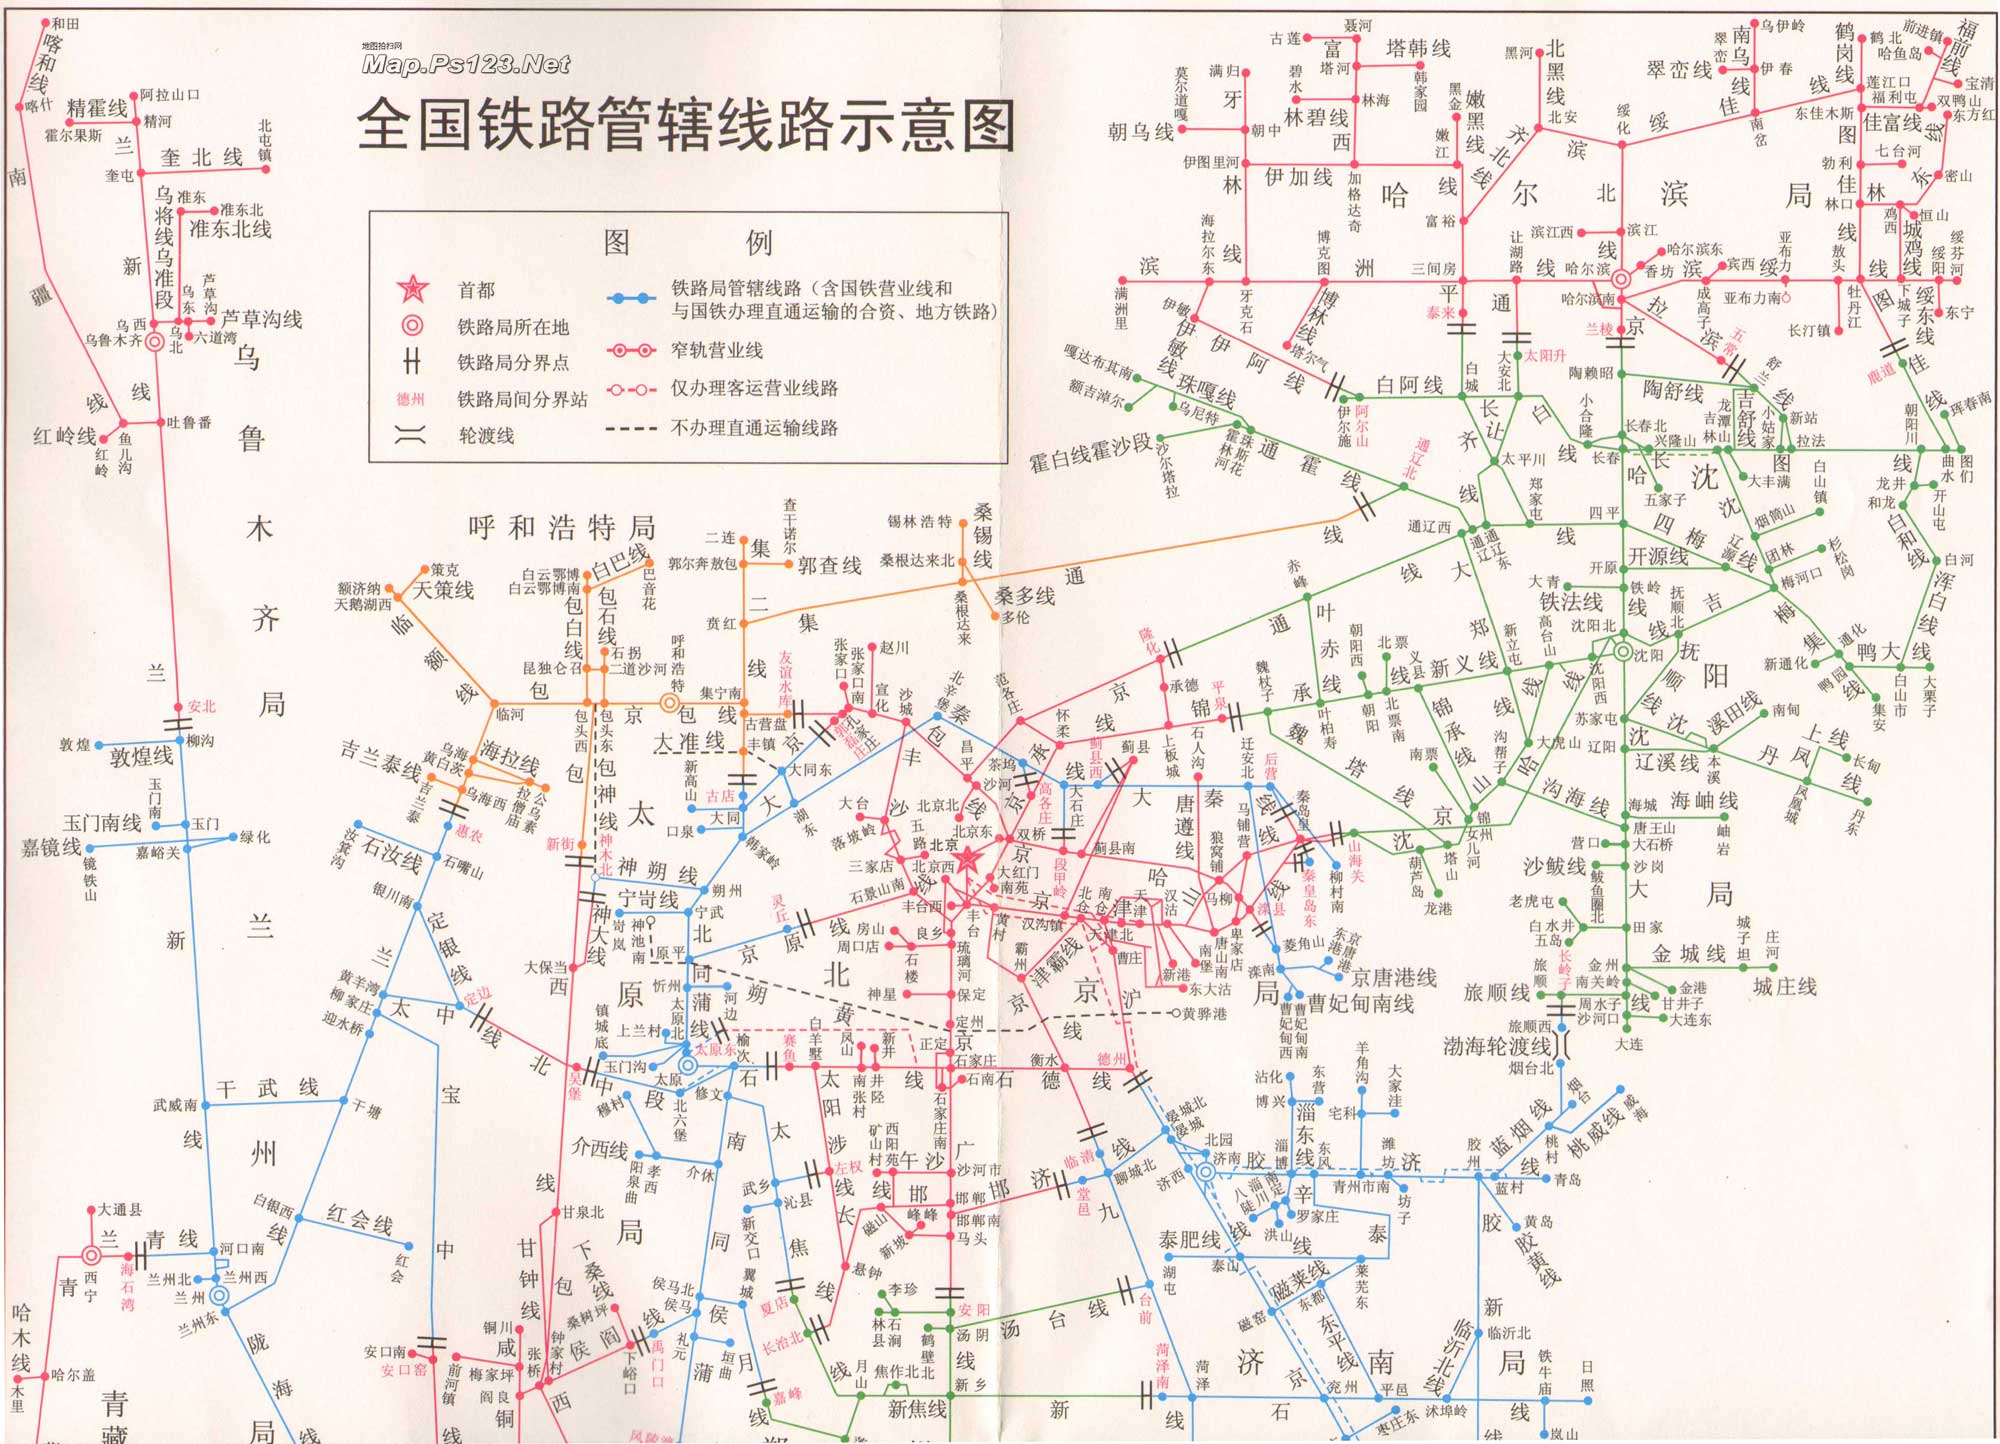 中国铁路管辖线路示意图_交通地图库_地图窝图片